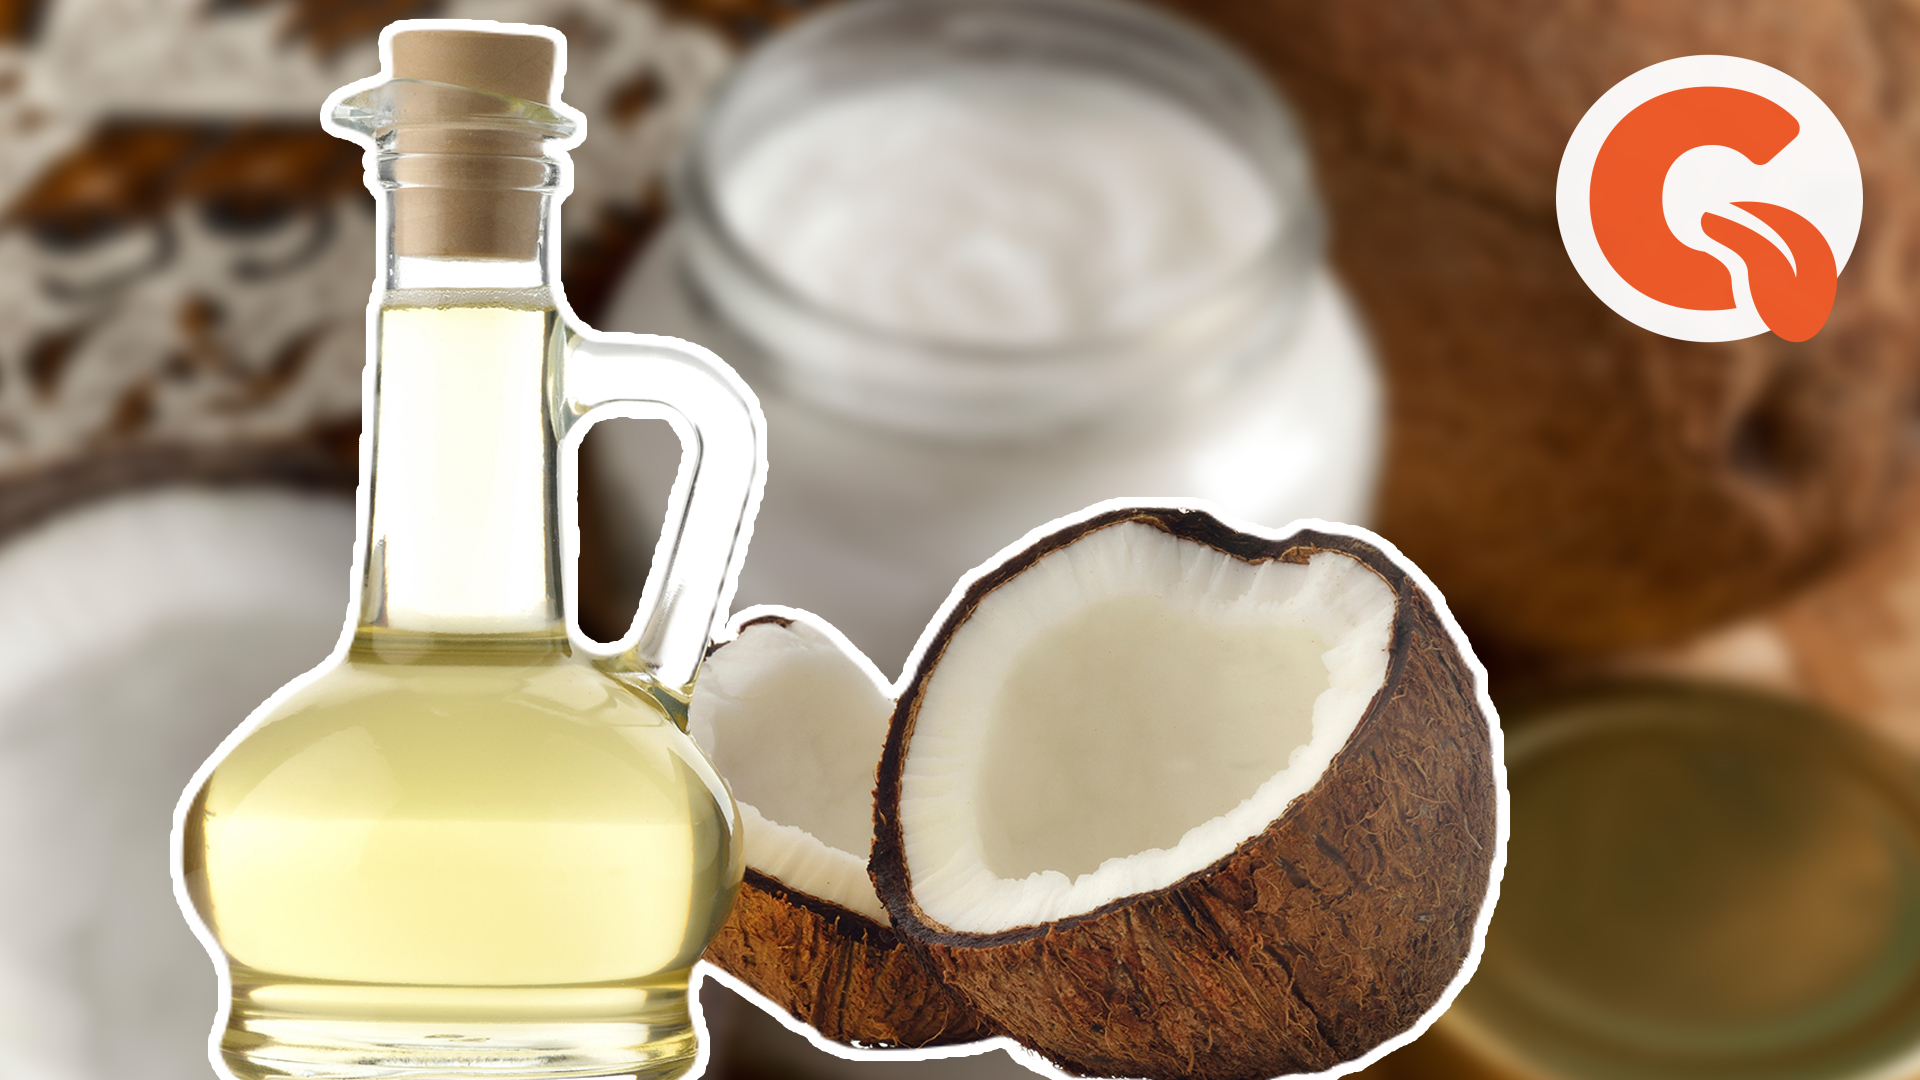 Масло во рту отзывы. Кокосовое масло для полоскания рта. Полоскание рта кокосовым маслом. Как полоскать рот кокосовым маслом. Чем полезно полоскать рот кокосовым маслом с утра.